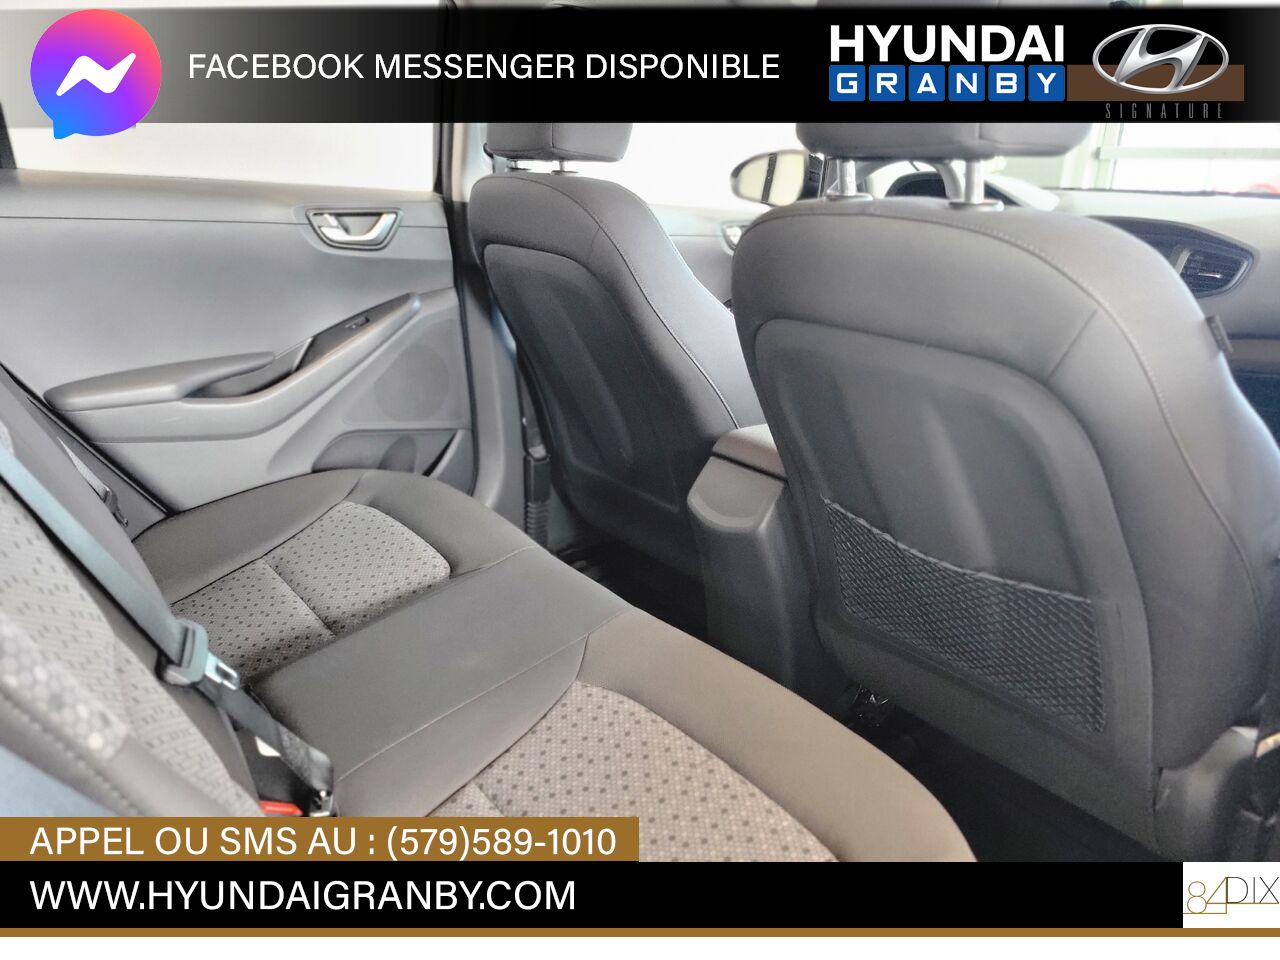 2019 Hyundai Ioniq hybride Granby - photo #13